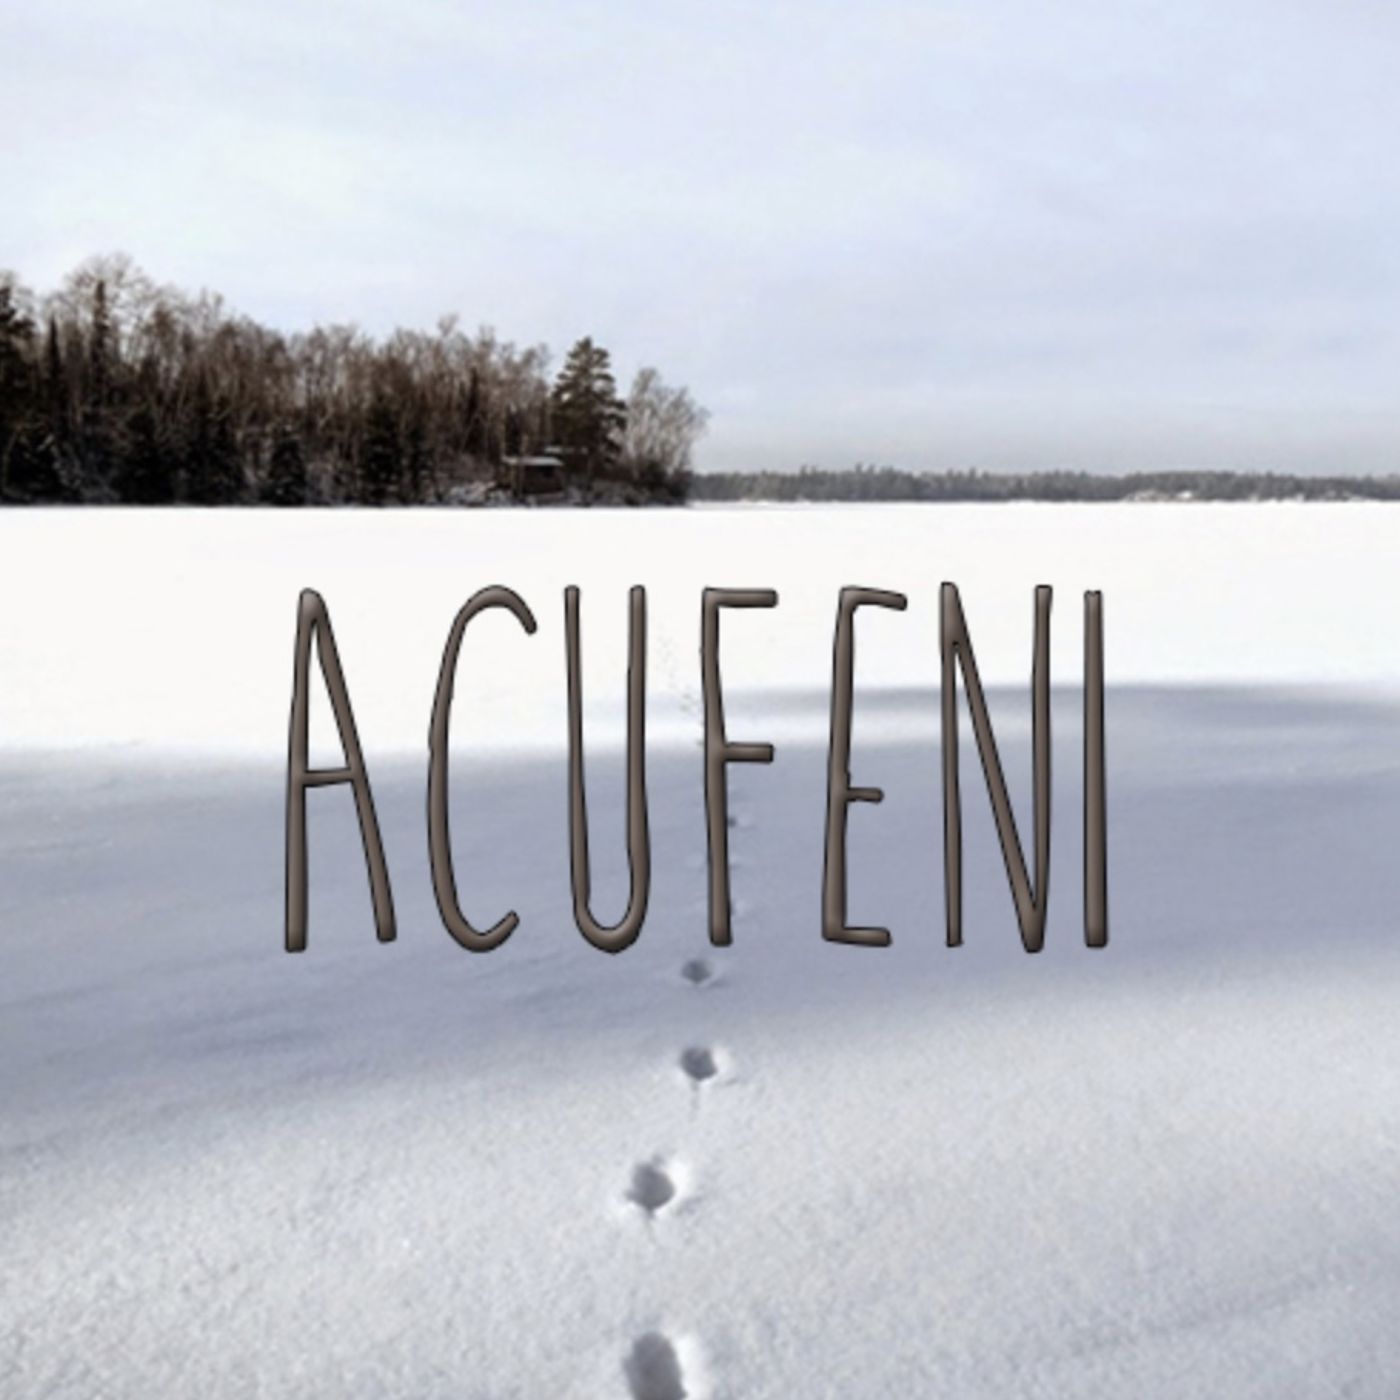 Acufeni s06e06 - Un bizzarro itinerario